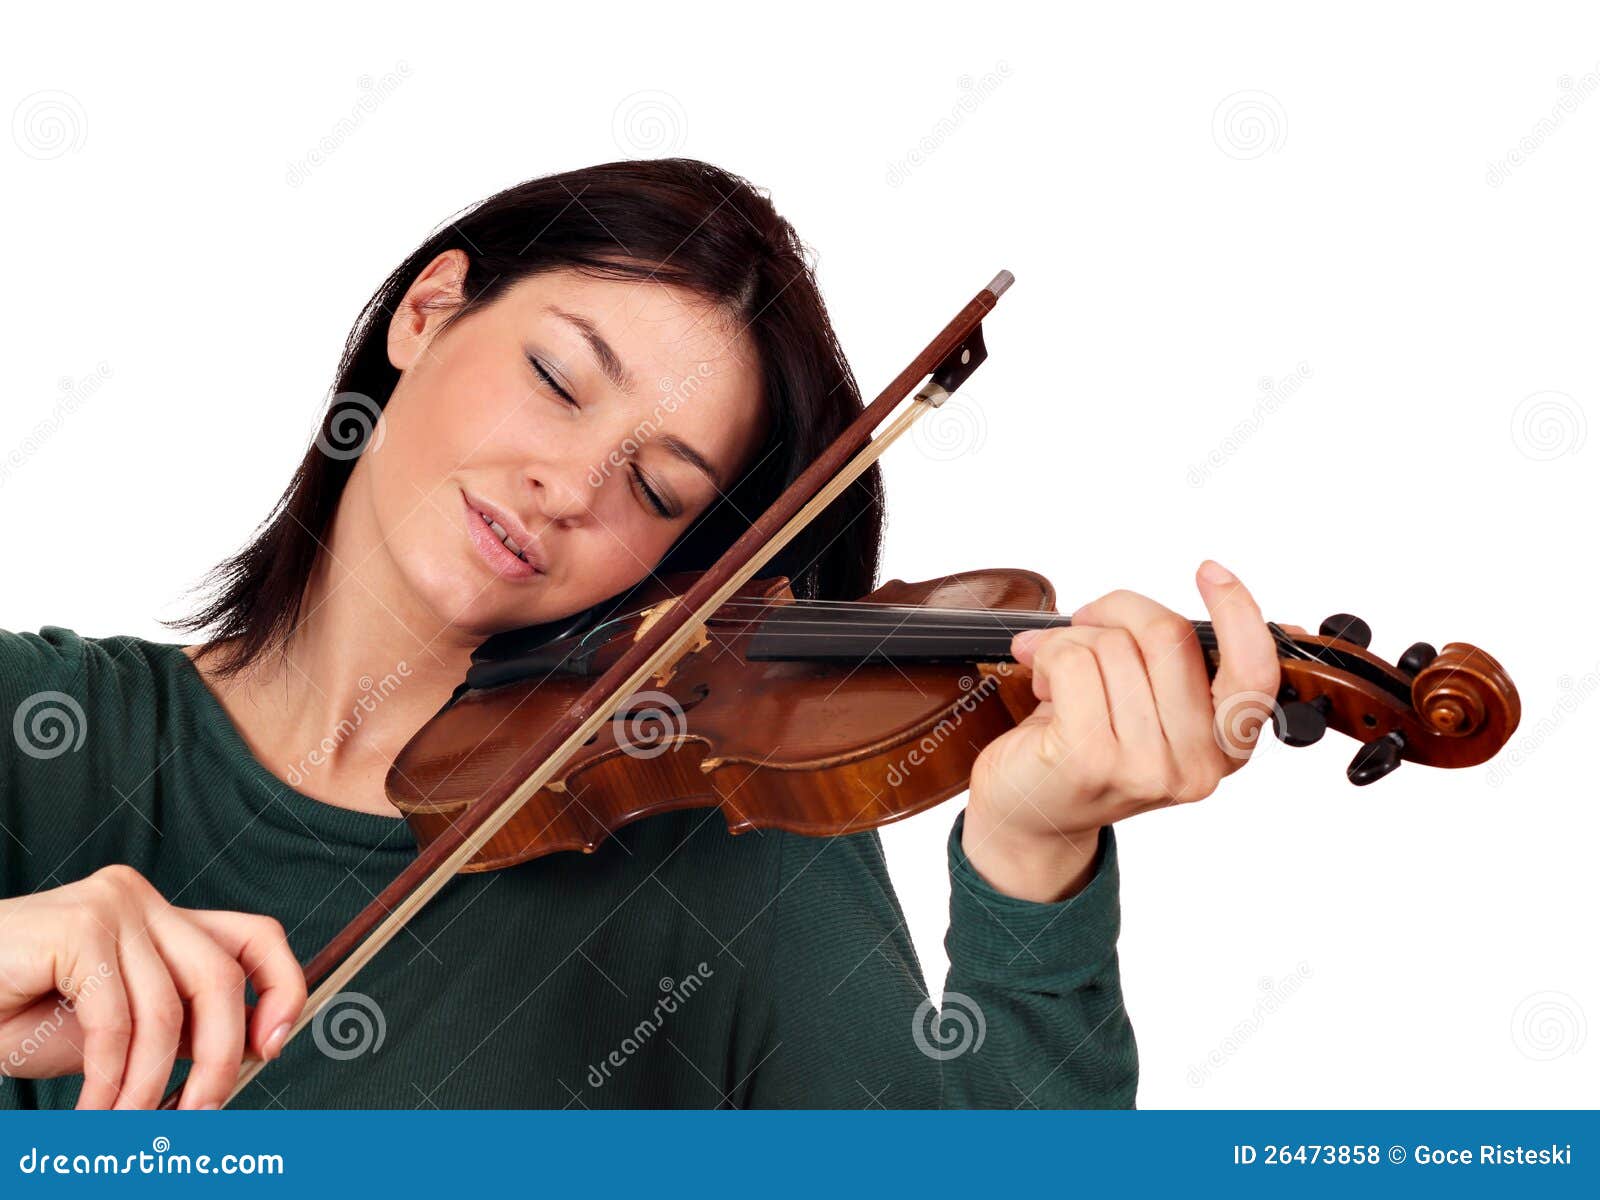 My brother played the violin. Девушка, которая играет на скрипке stock. Фотосессия со скрипкой в студии. Фотографии скрипки. Скрипачи женщины Франции.